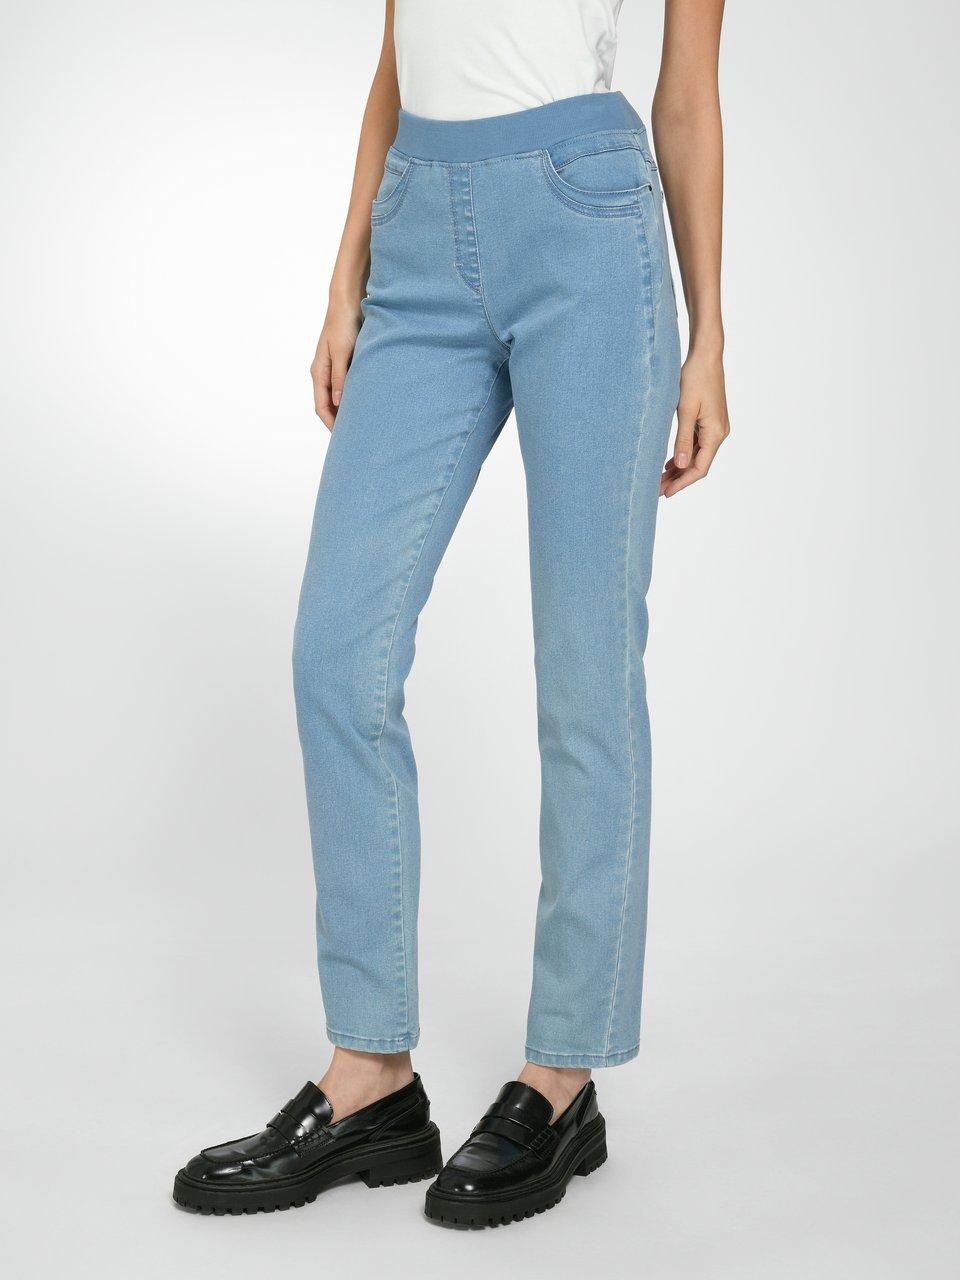 Damen Jeans in Hahn Peter 22 kaufen bei Größe online